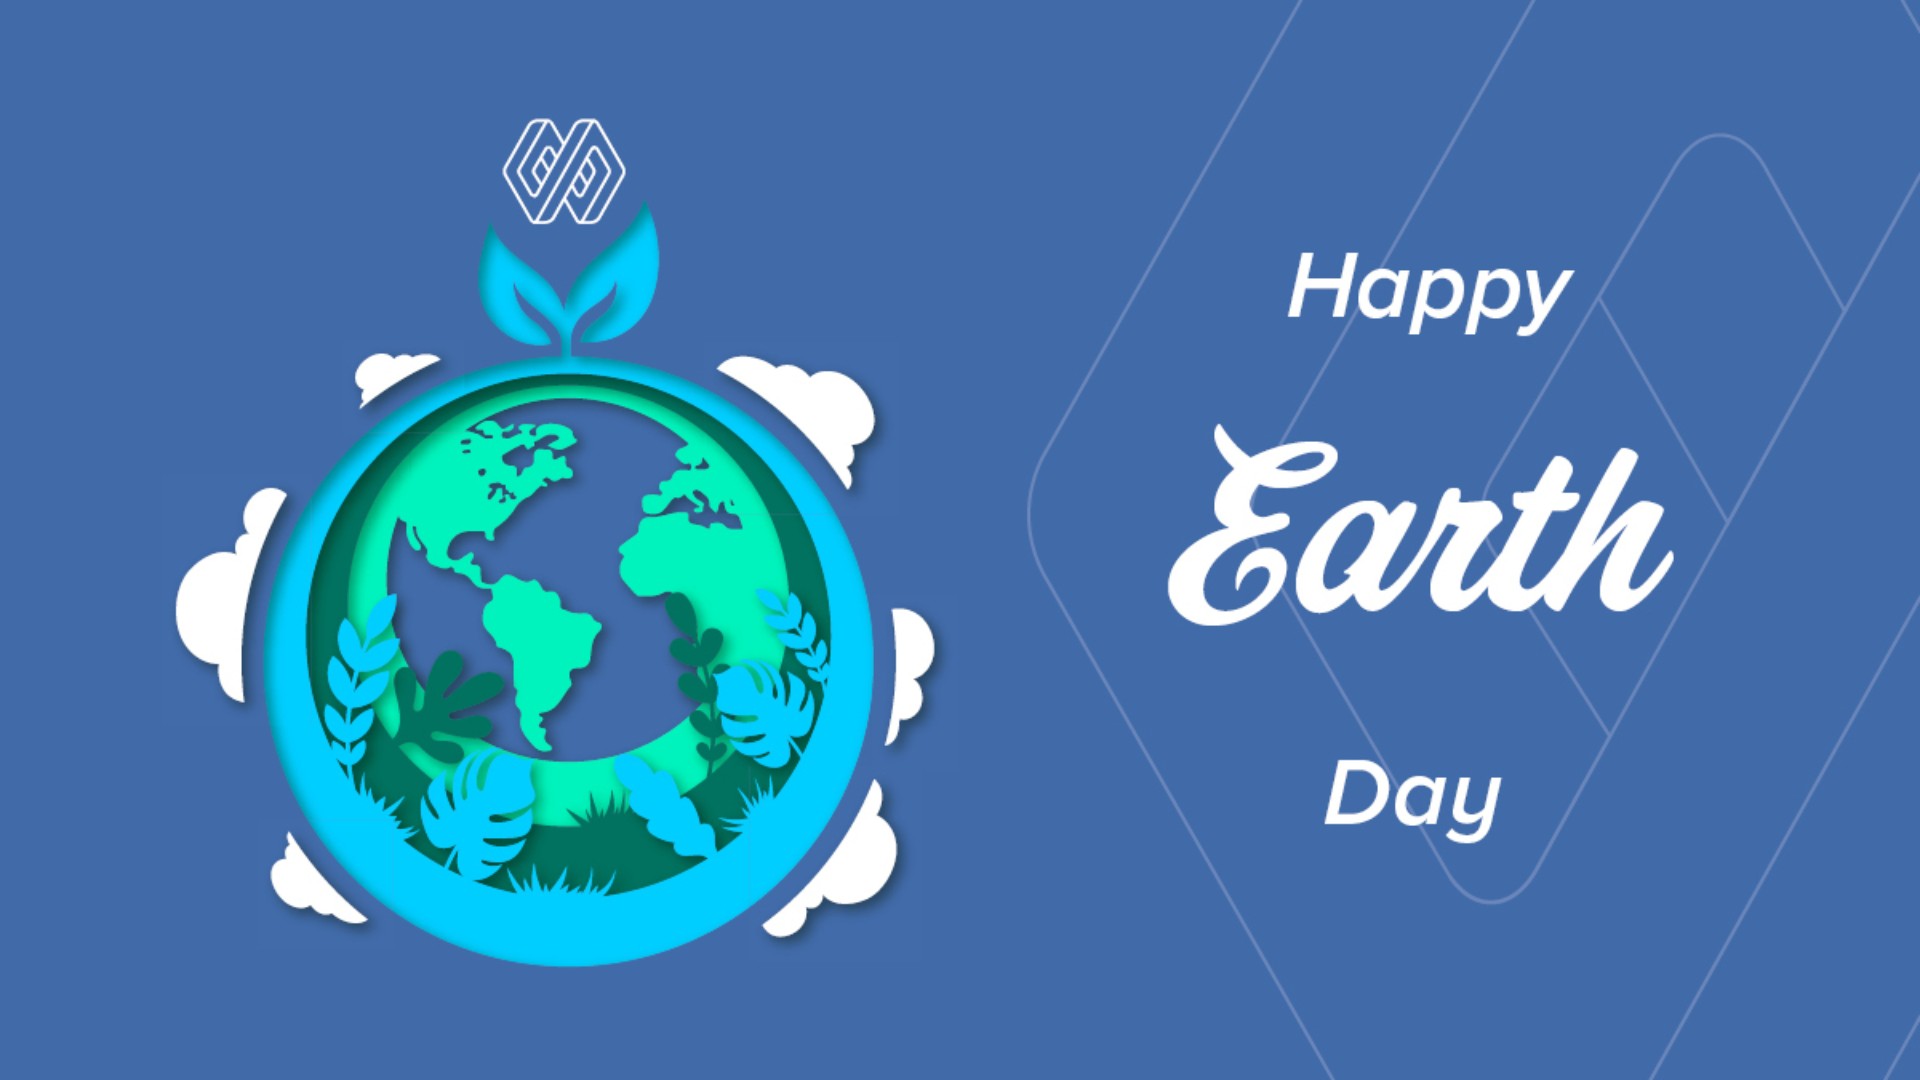 Earth Day Desktop Wallpaper